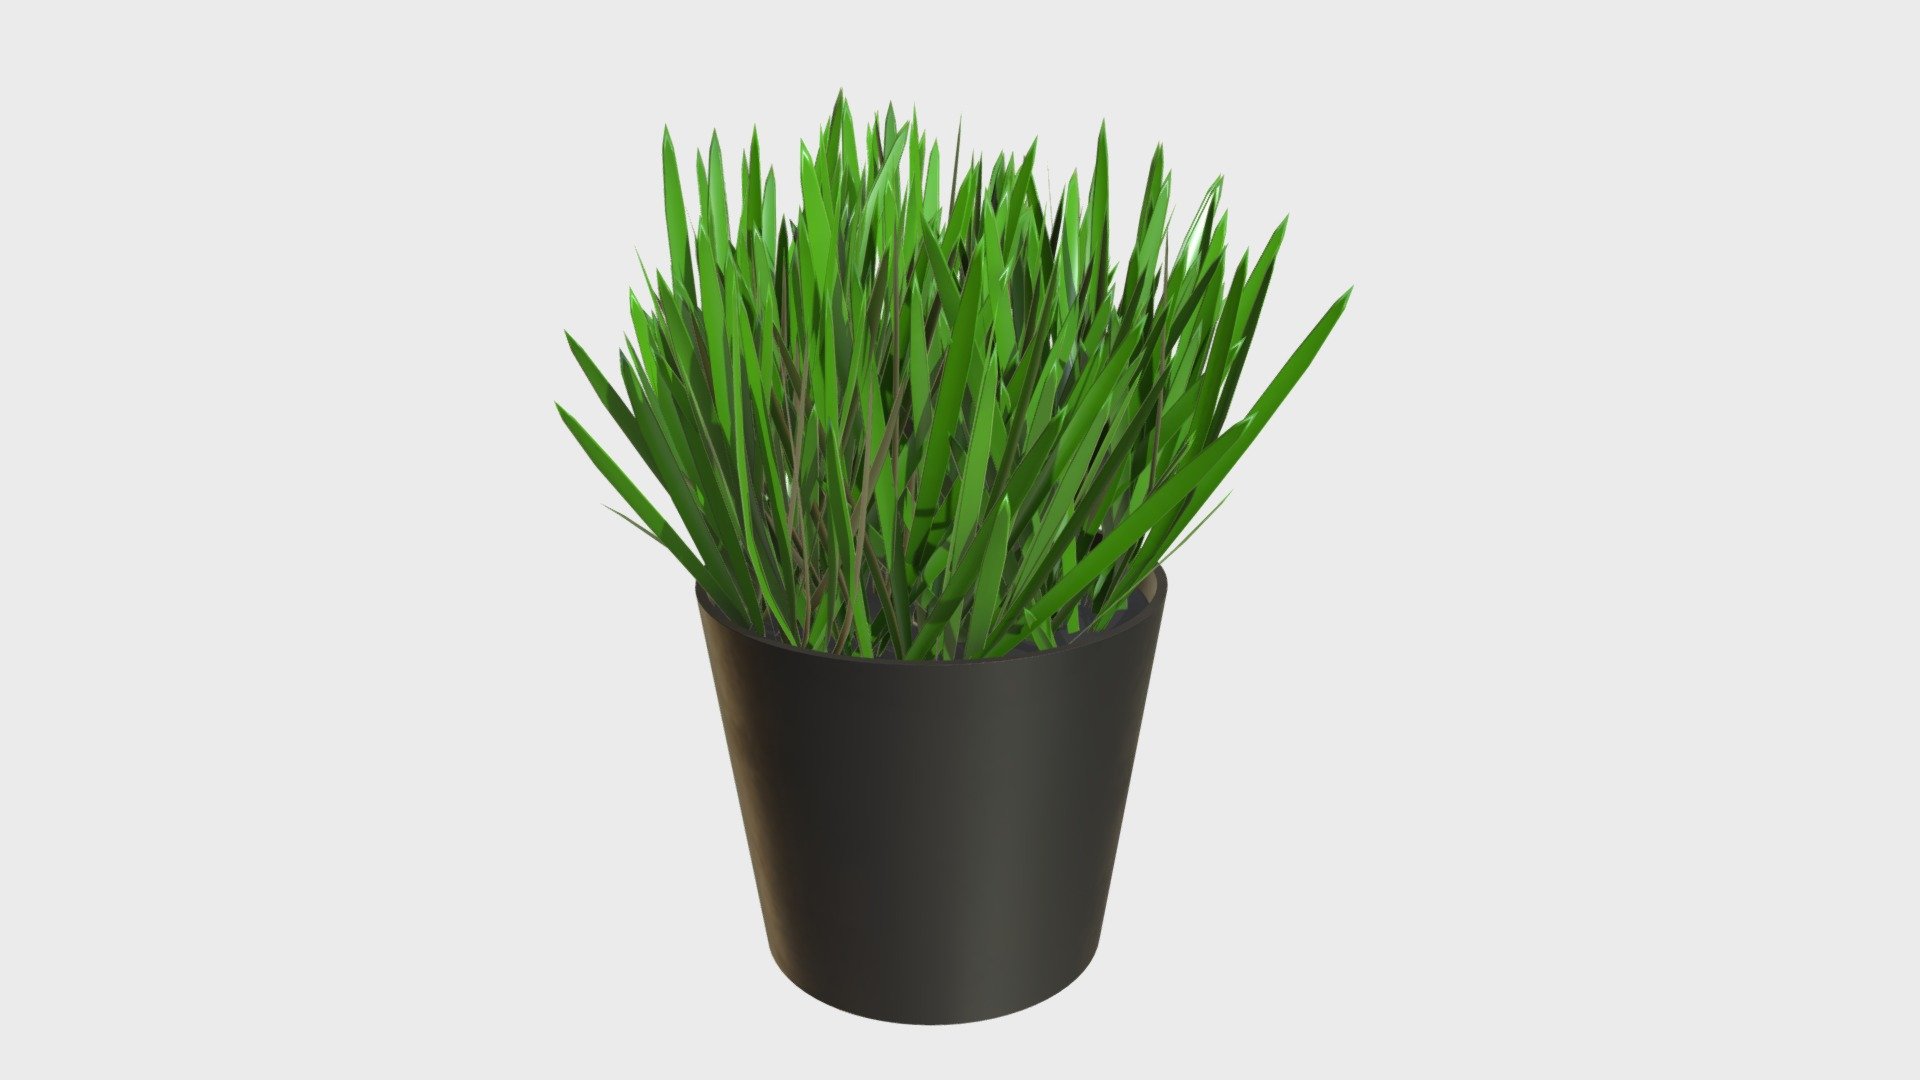 Grass in a pot 1